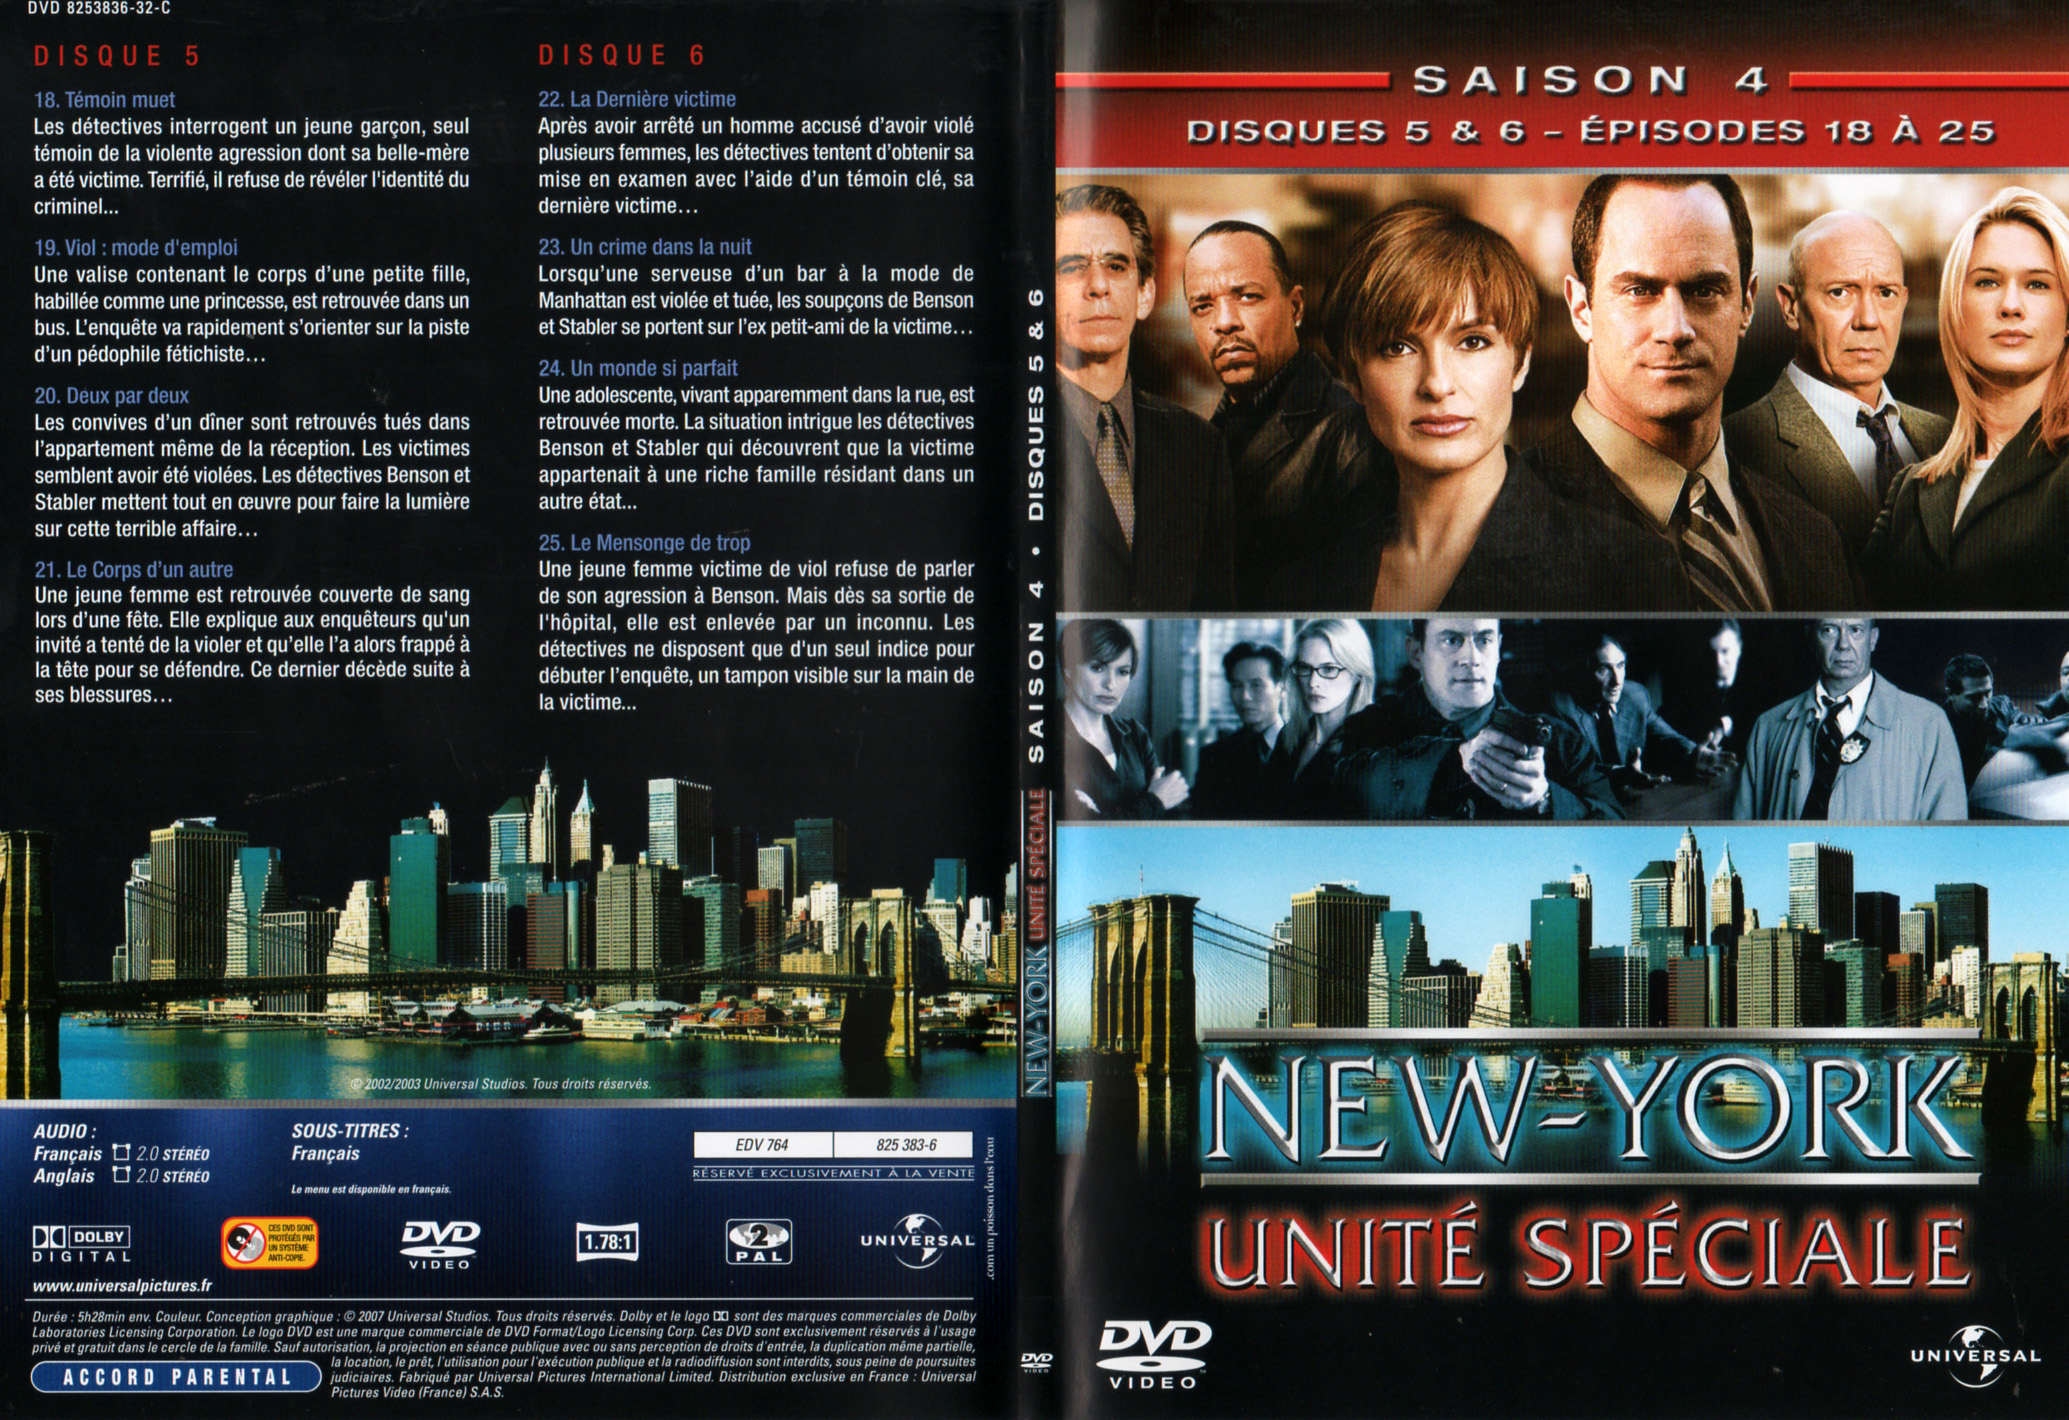 Jaquette DVD New York unit spciale saison 4 DVD 3